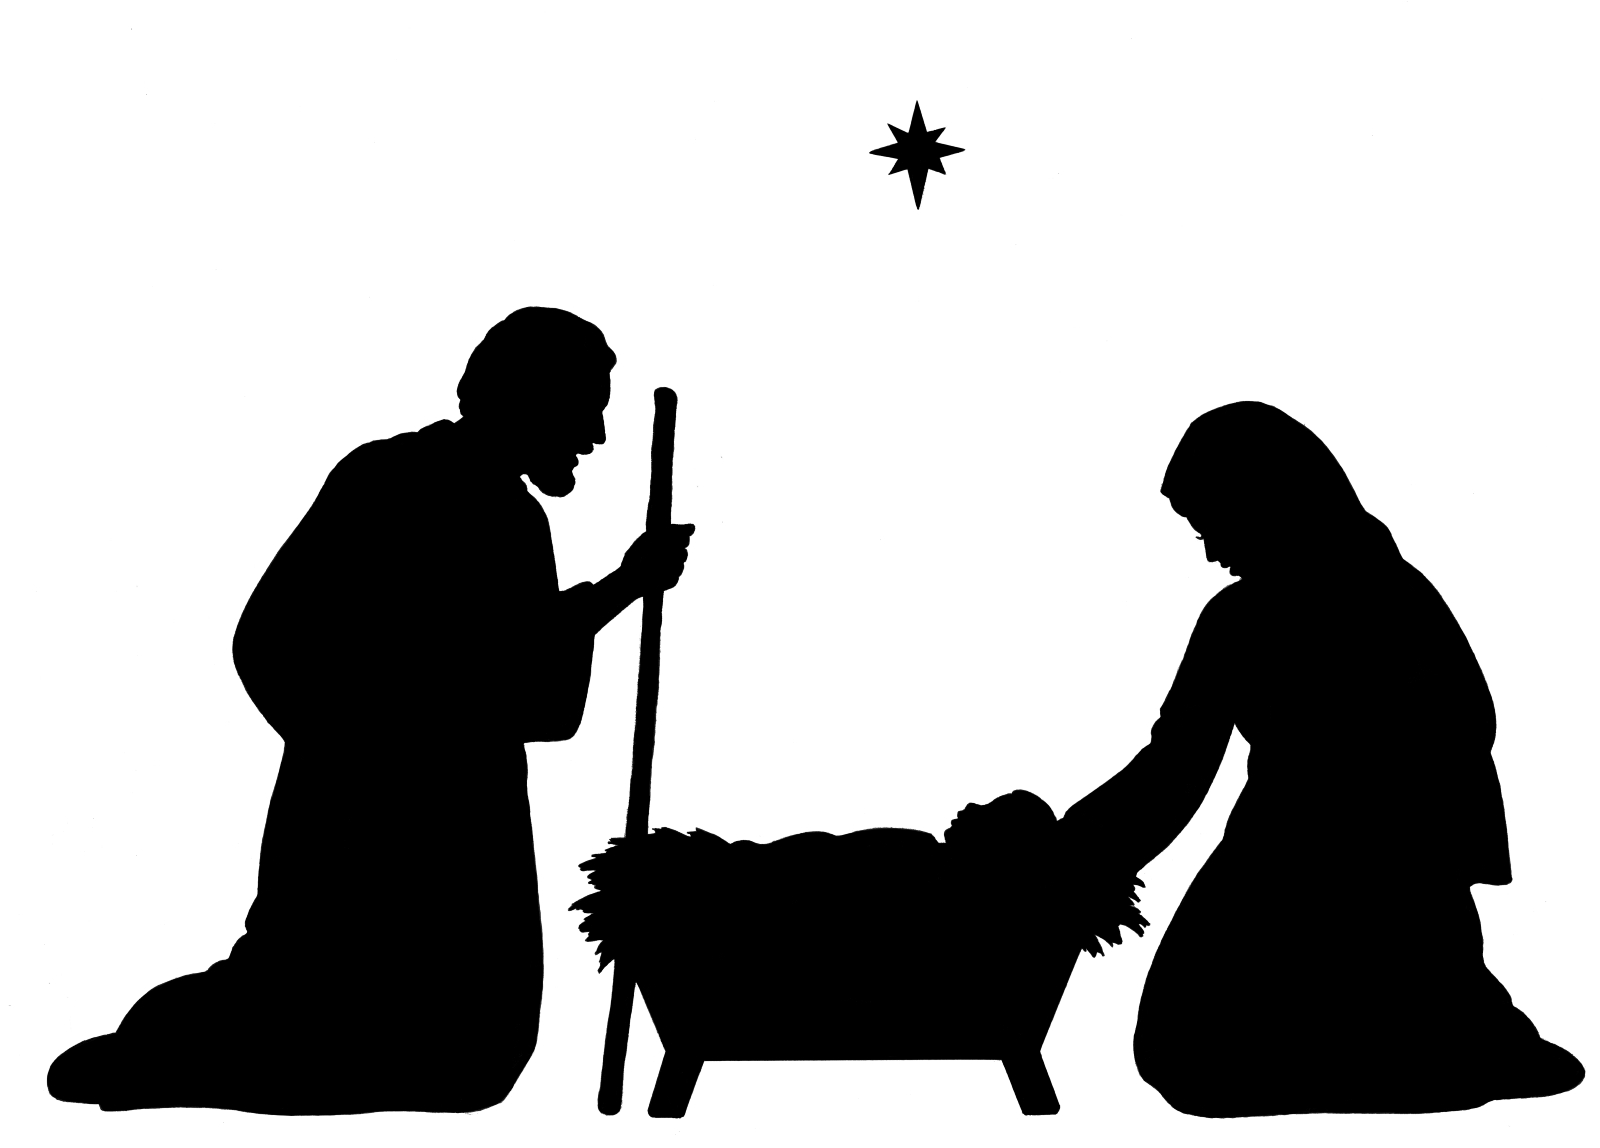 Free nativity scene silhouette clip art